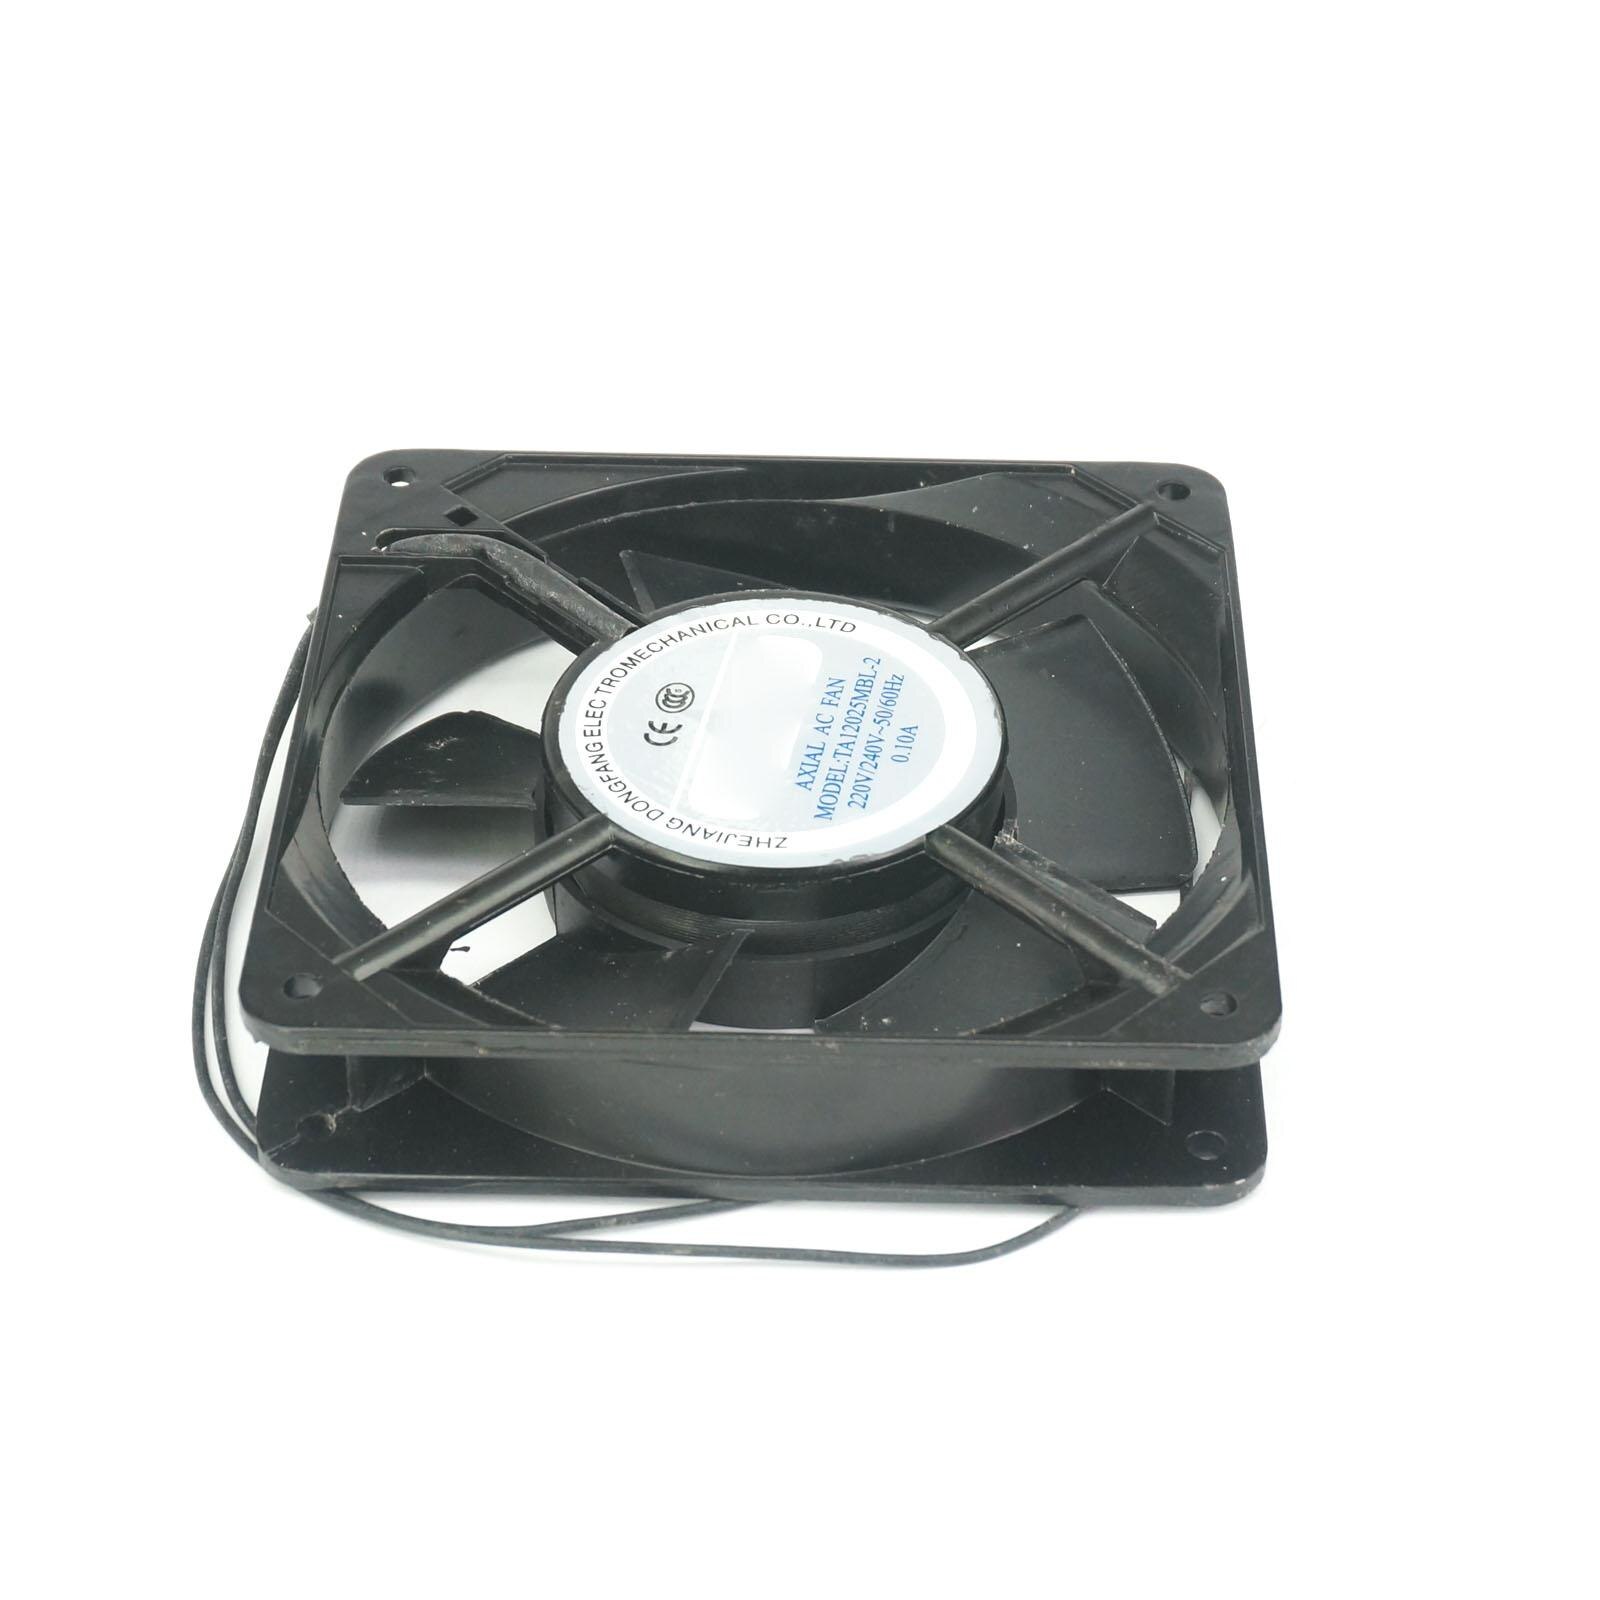 Ventilateur de radiateur Axial 220V AC, 120x120x25mm, 61cfm, 2100 tr/min, roulement à billes, grande vitesse